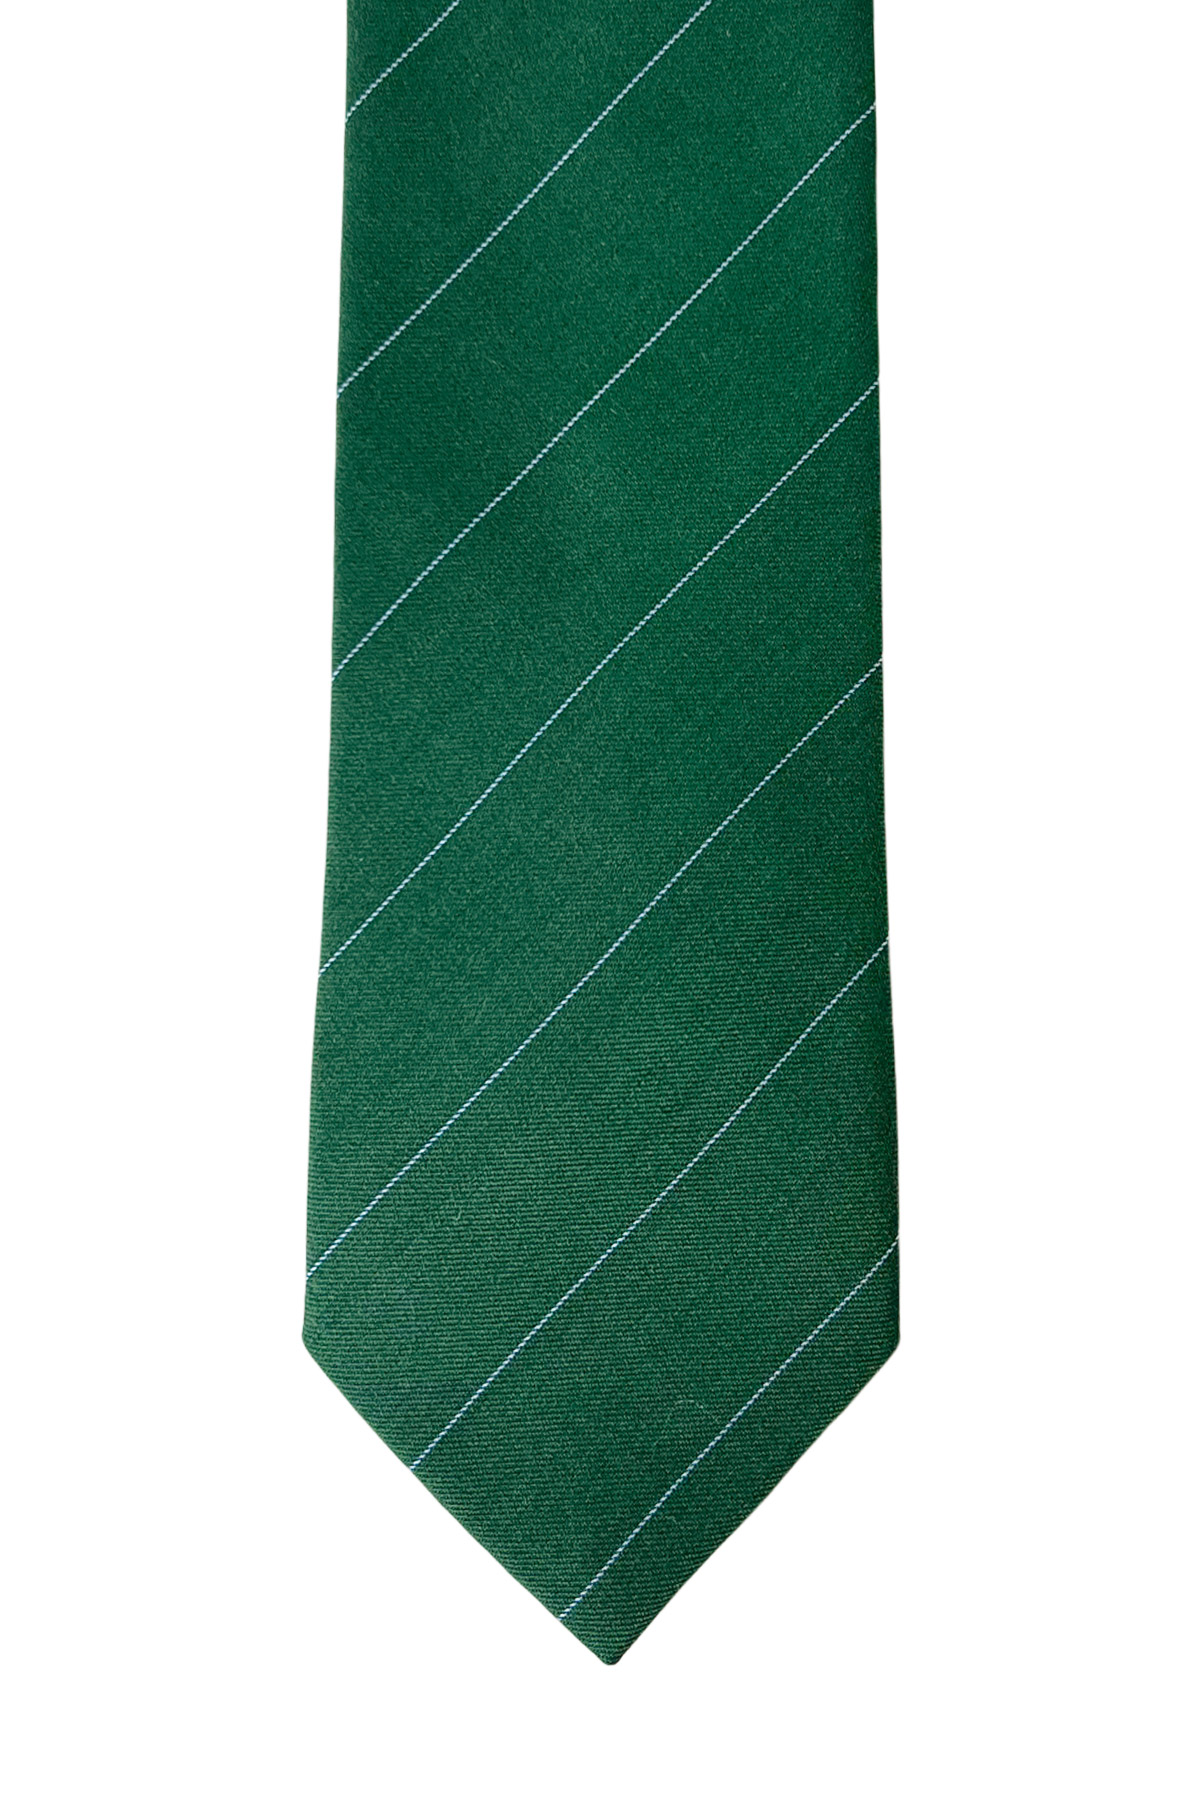 Cravatta uomo verde riga celeste 8cm da cerimonia elegante 100% fresco lana super 130's